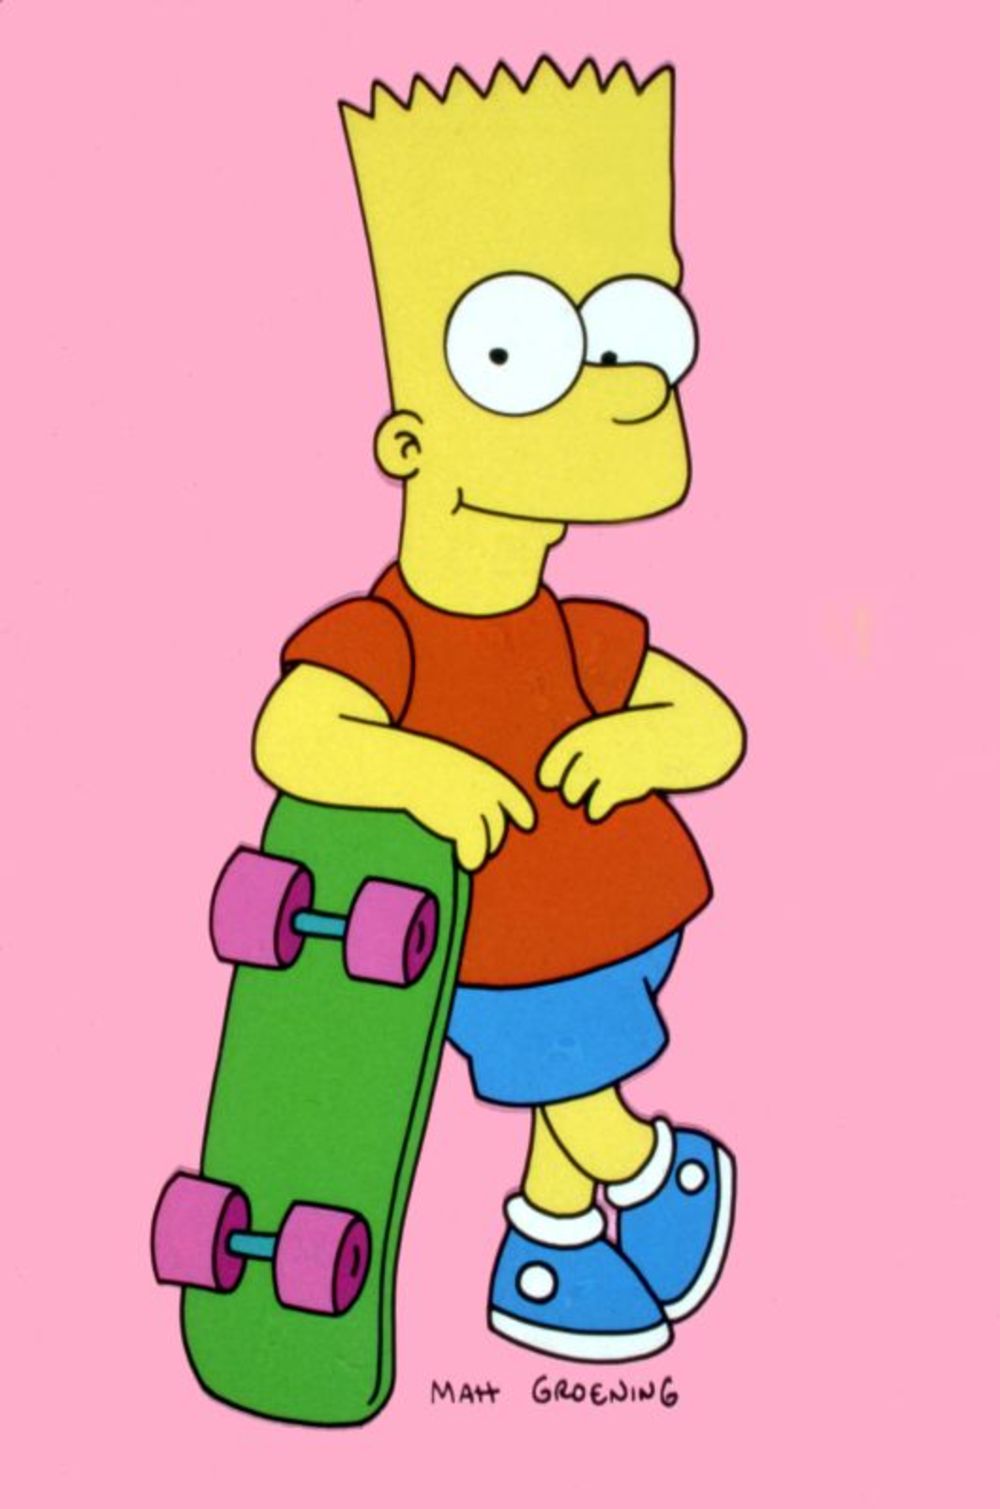 Popularni serijal Simpsonovi biće emitovan na TV Avala od 1. maja, radnim danima u 18:30 i vikendom u 12:30 časova